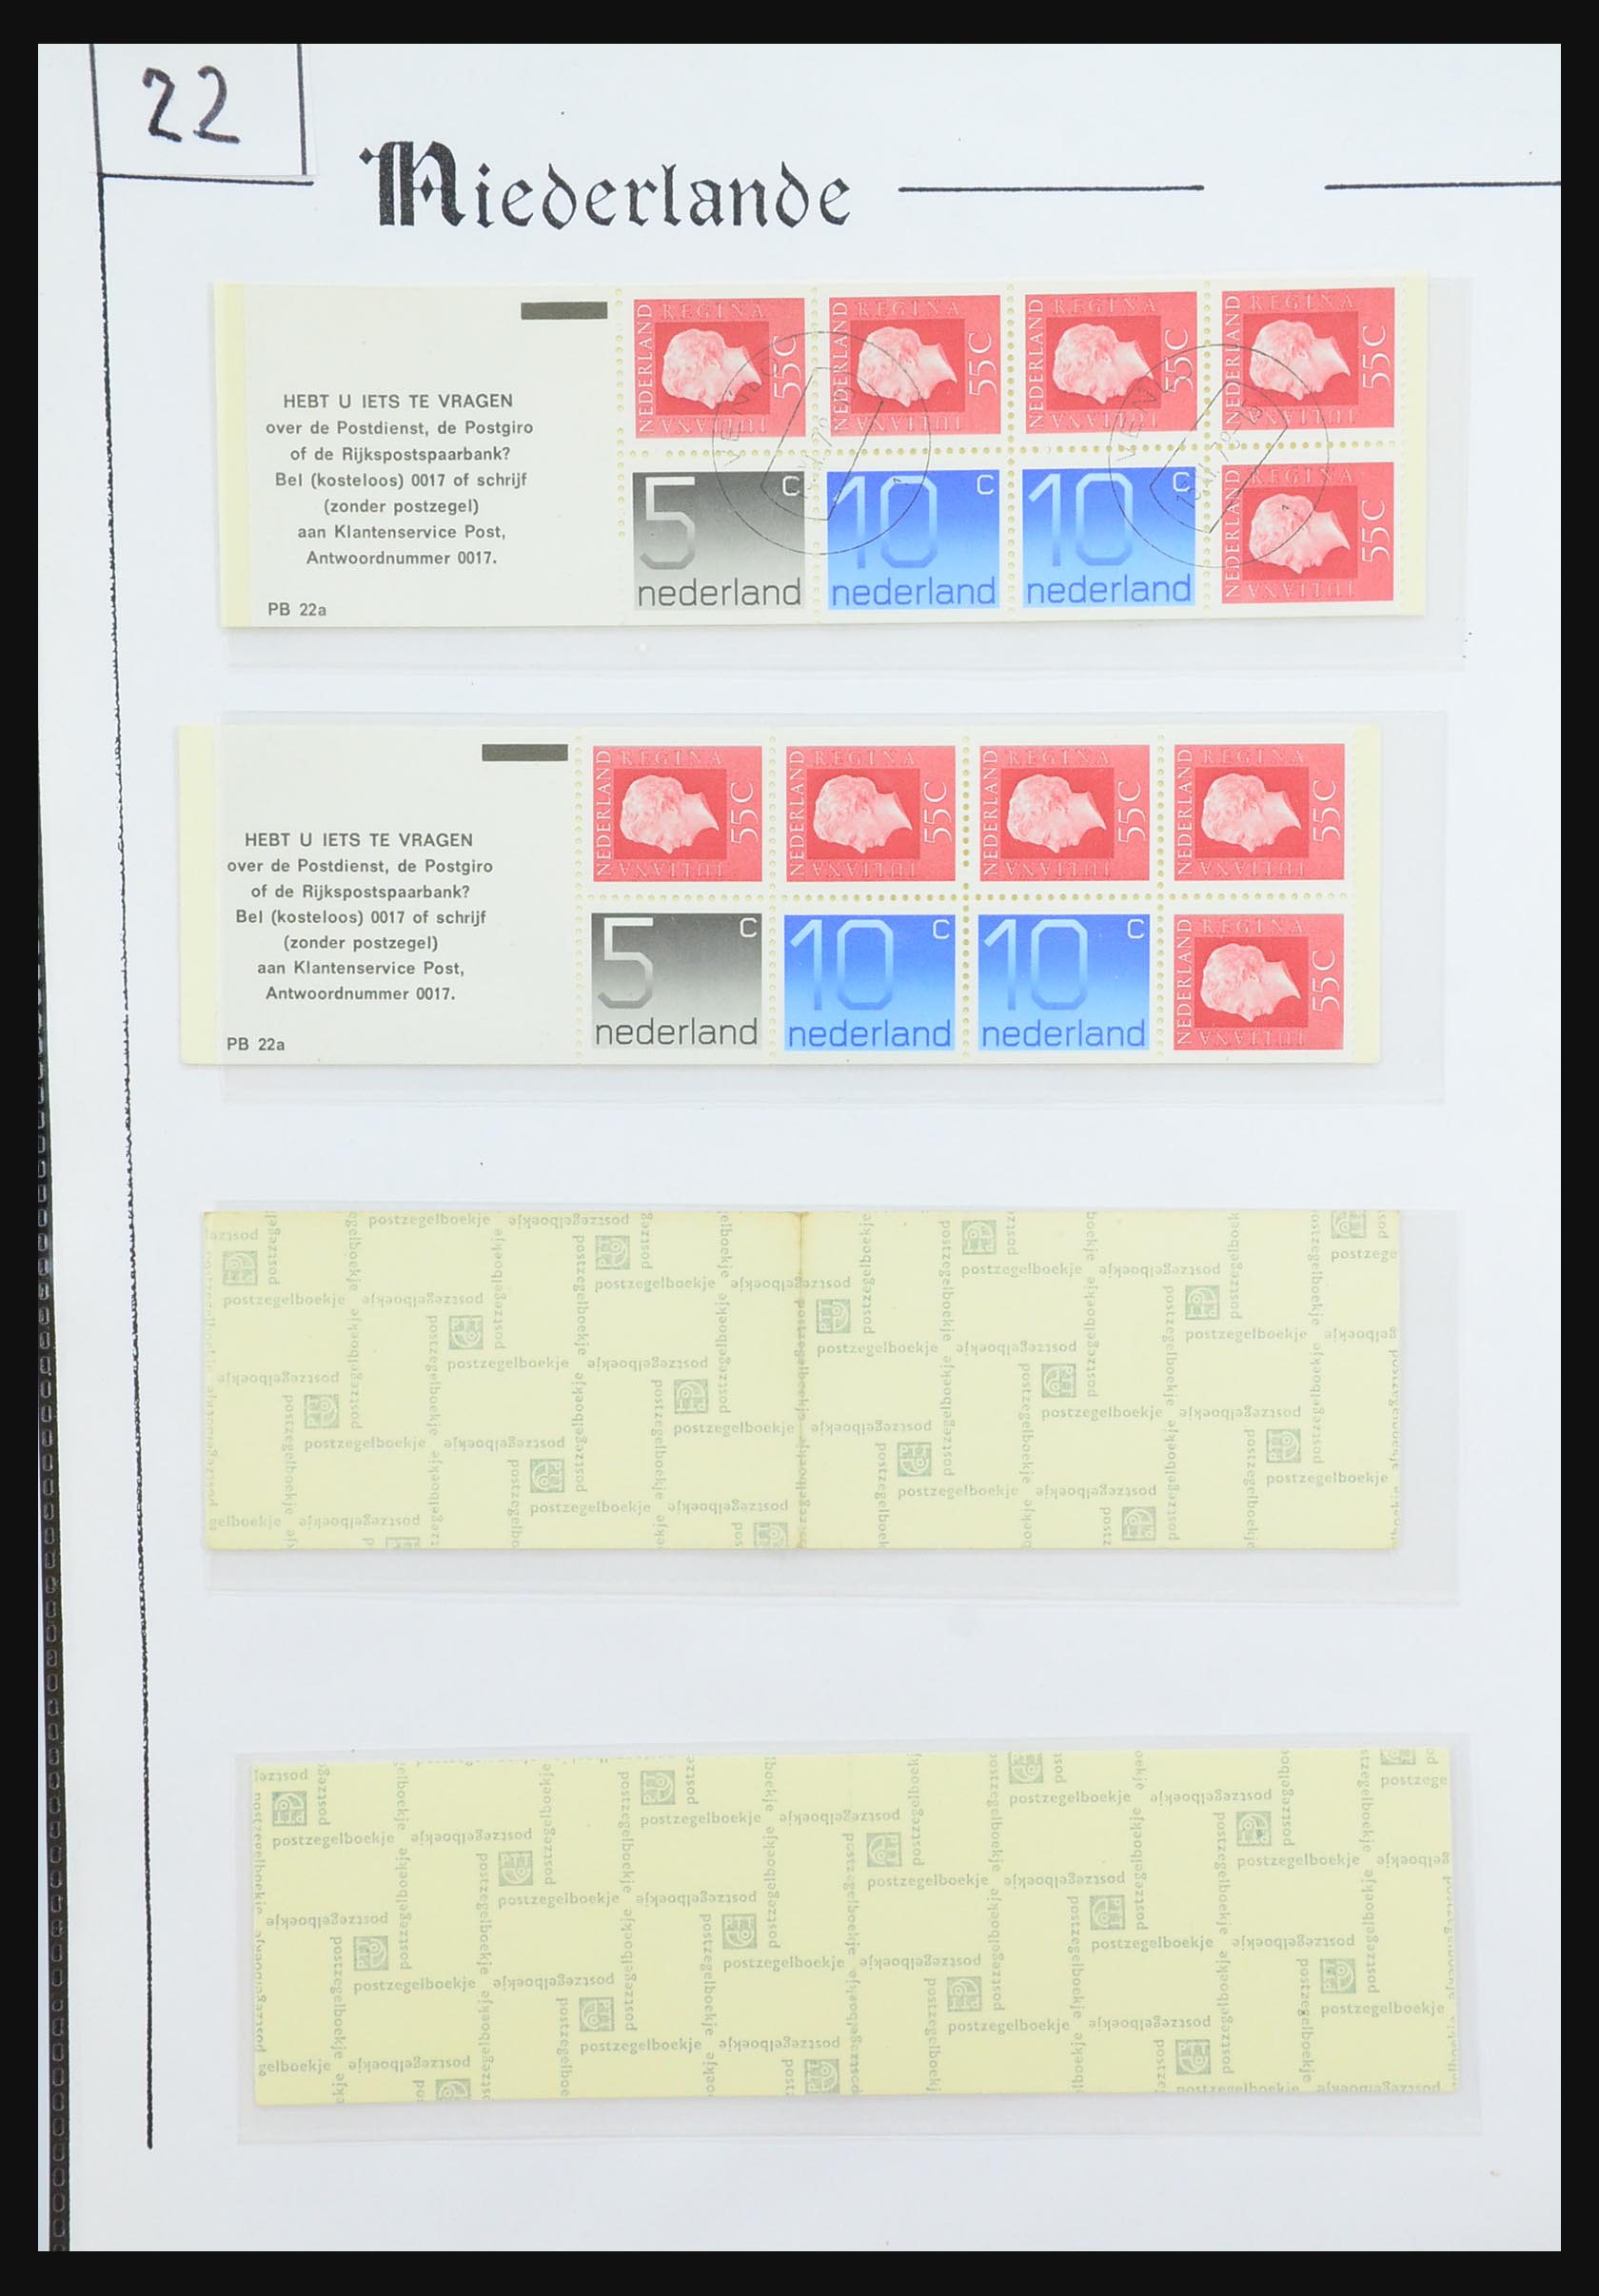 31311 071 - 31311 Netherlands stamp booklets 1964-1994.